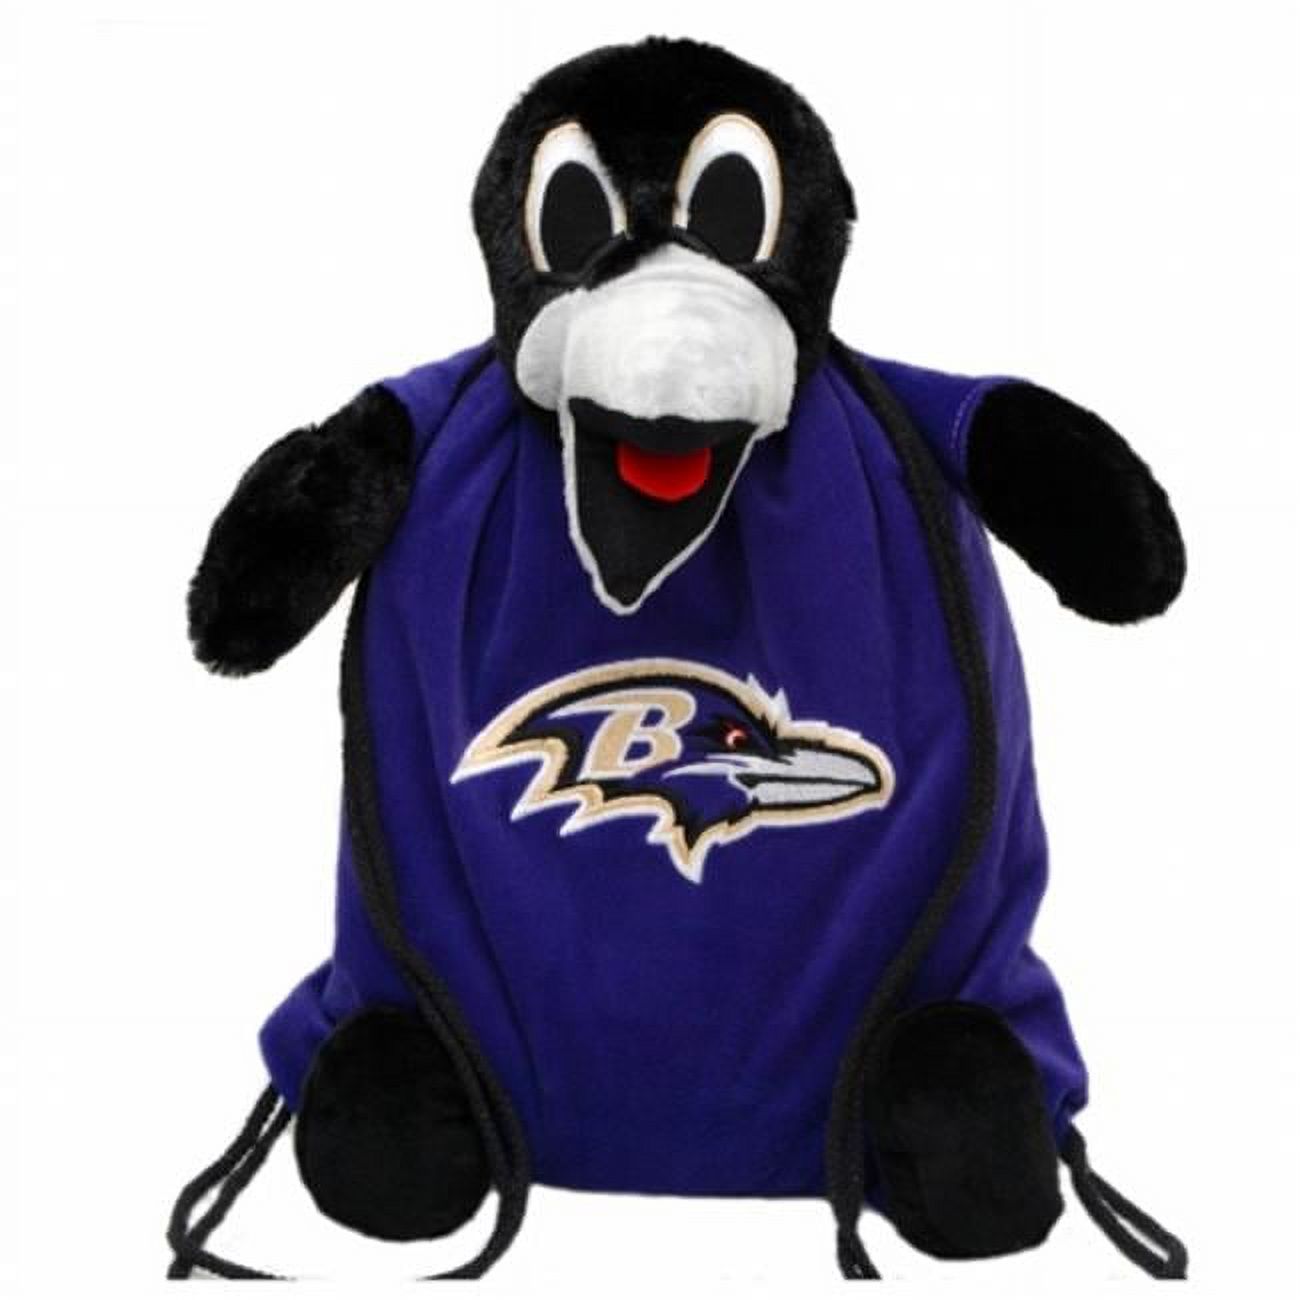 NFL Baltimore Ravens Back Pack Pal-NFL 328651 - image 1 of 2